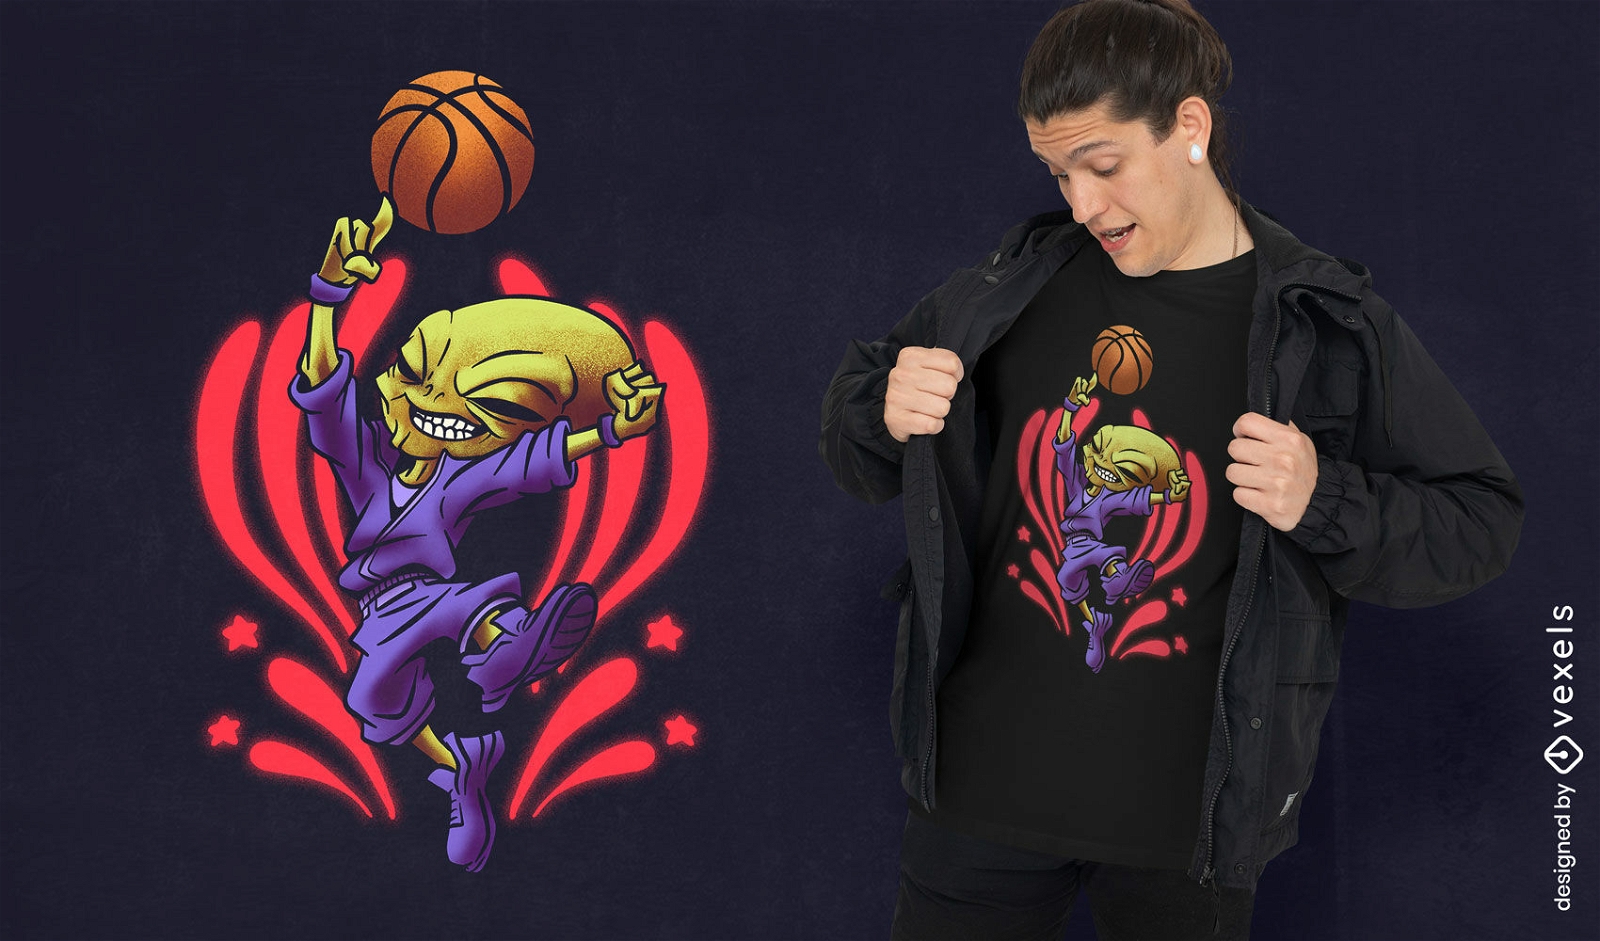 Basketball player alien t-shirt design